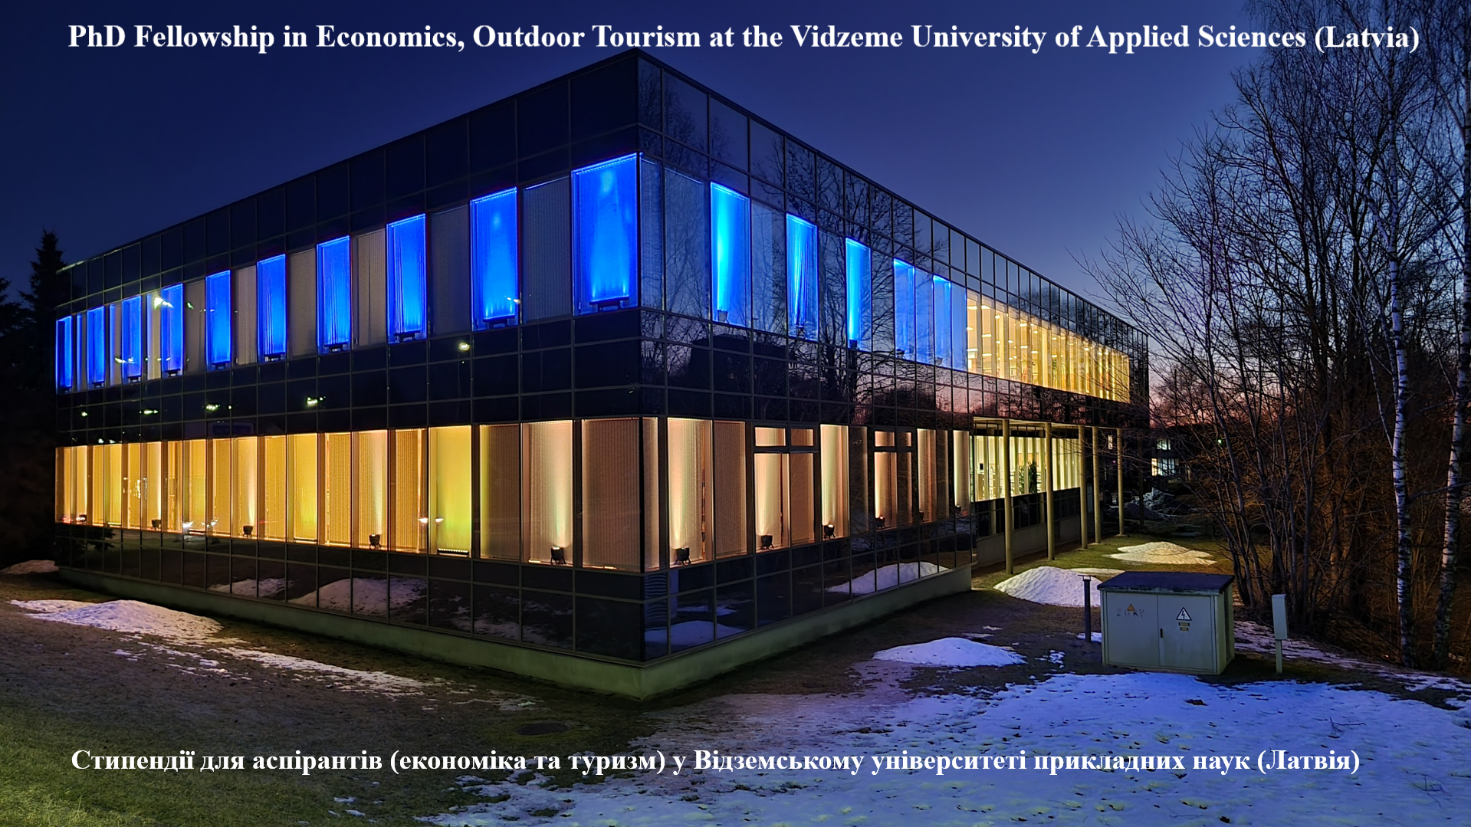 Відземський університет прикладних наук пропонує дослідницькі стипендії для аспірантів в галузі економіки та туризму